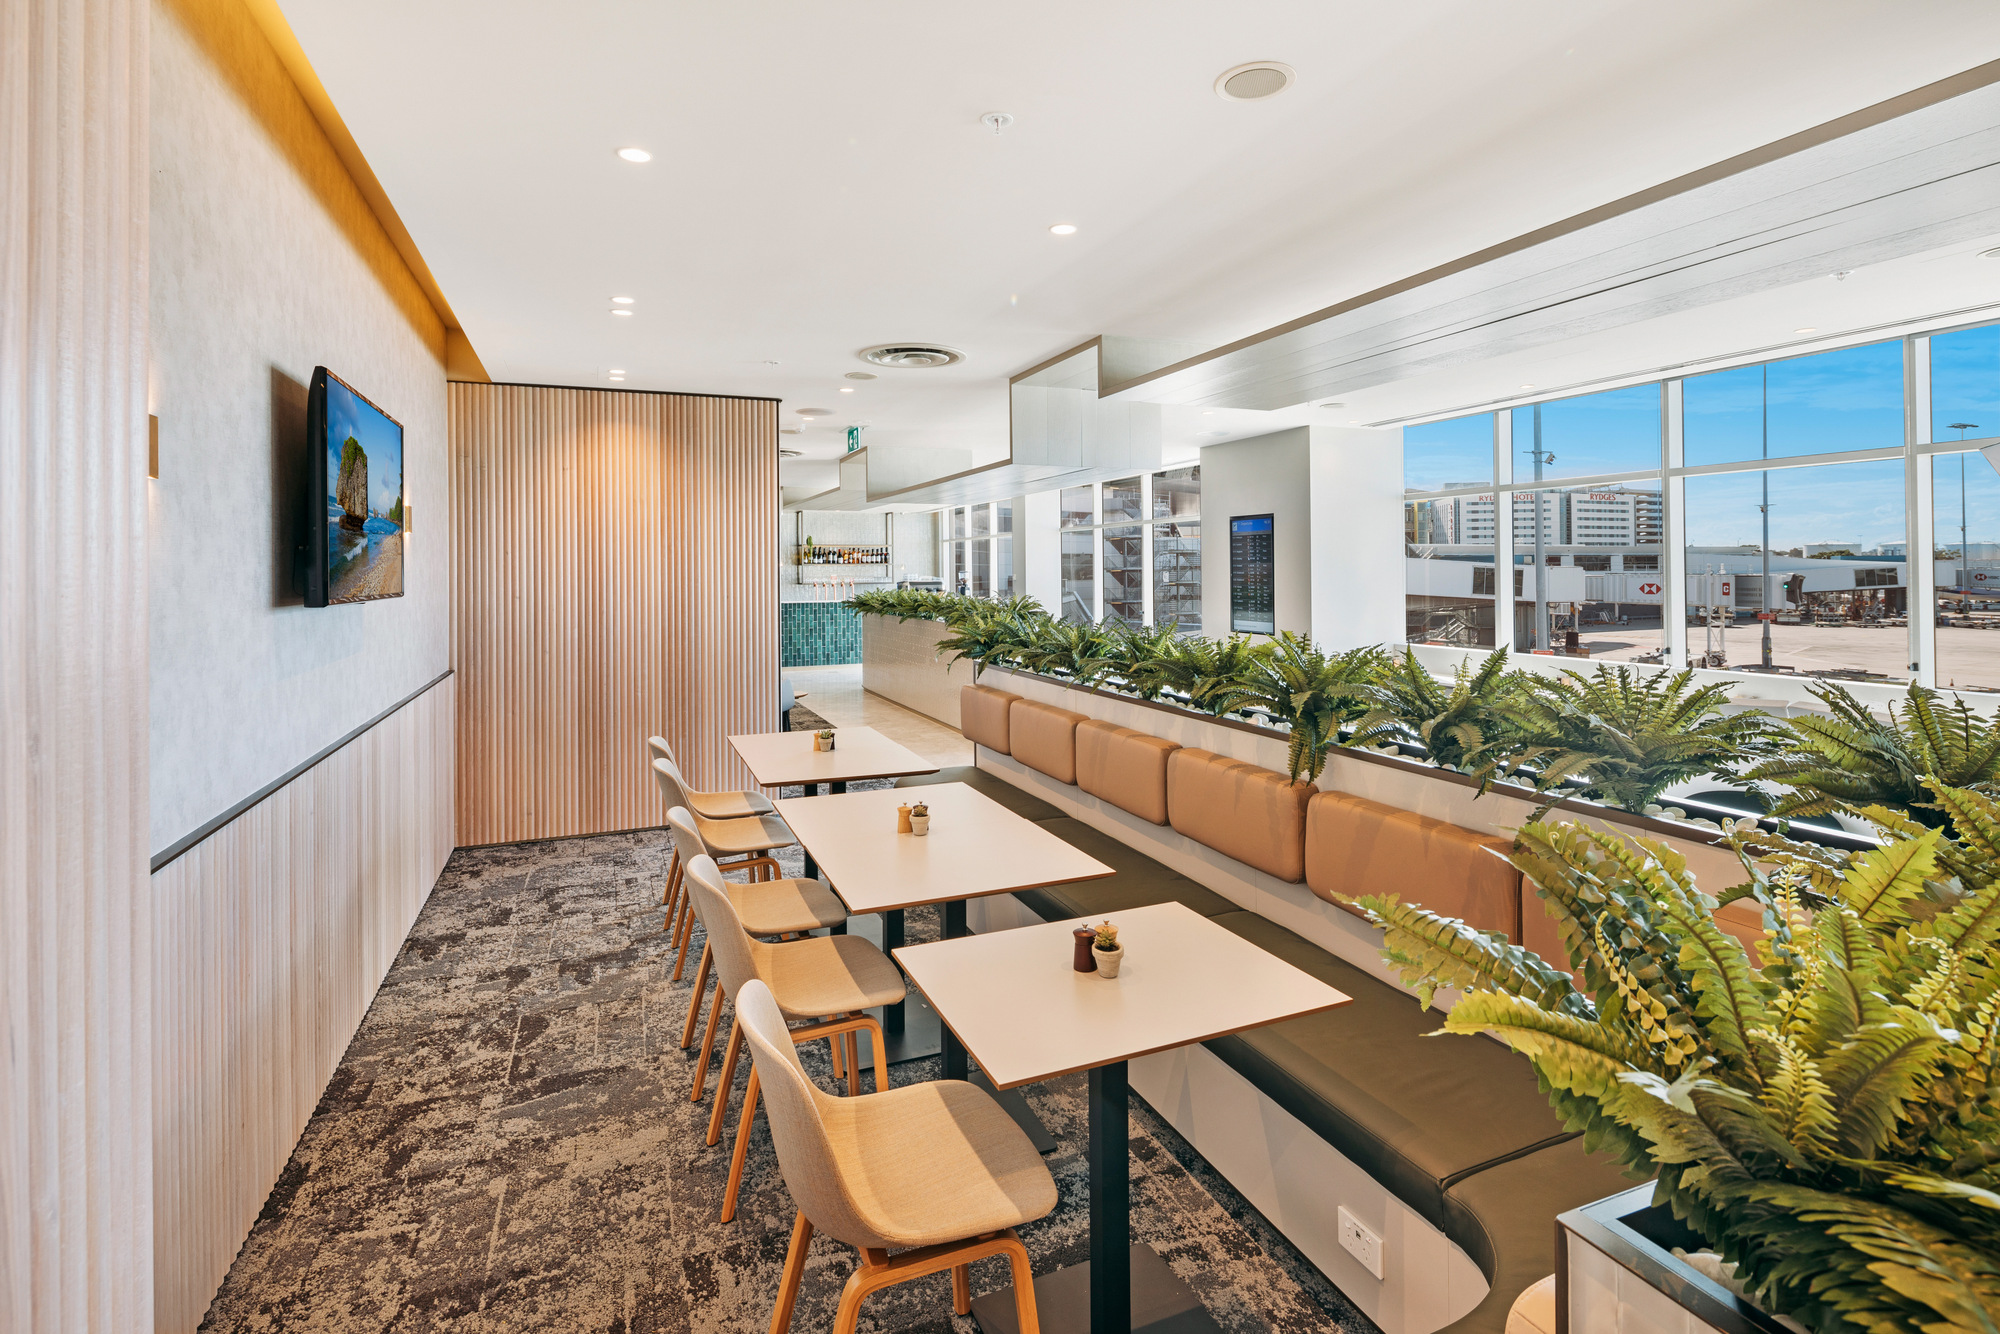 图片[2]|悉尼国际机场广场高级酒廊|ART-Arrakis | 建筑室内设计的创新与灵感